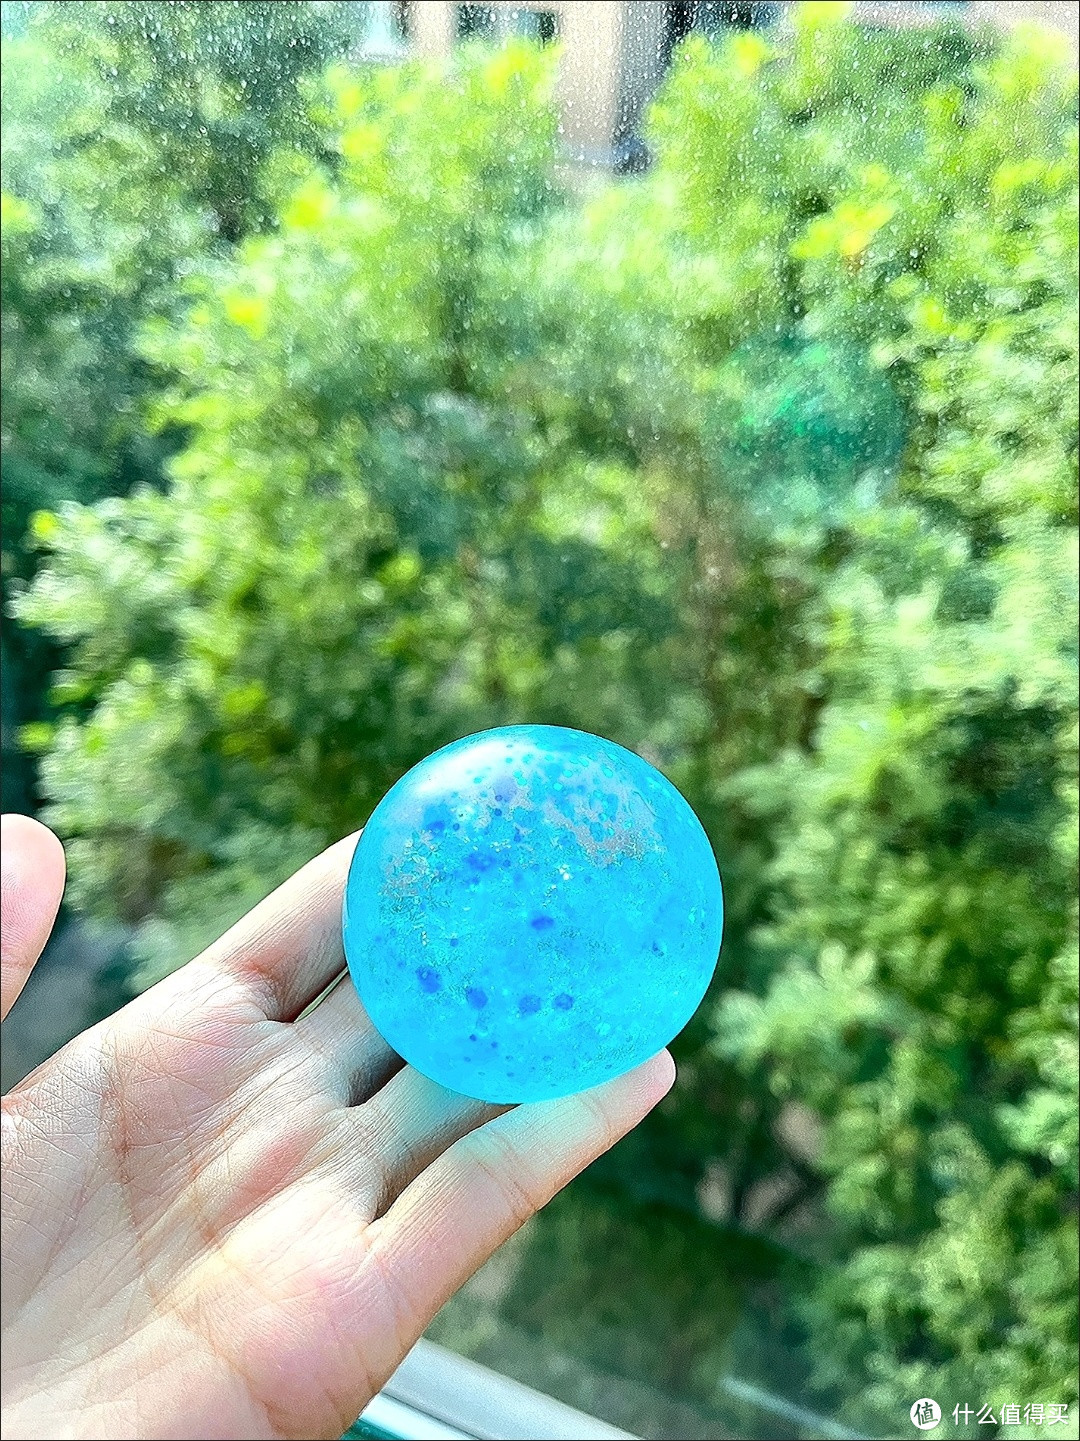 捏捏乐极光麦芽糖球：解压发泄的透明糖浆球

